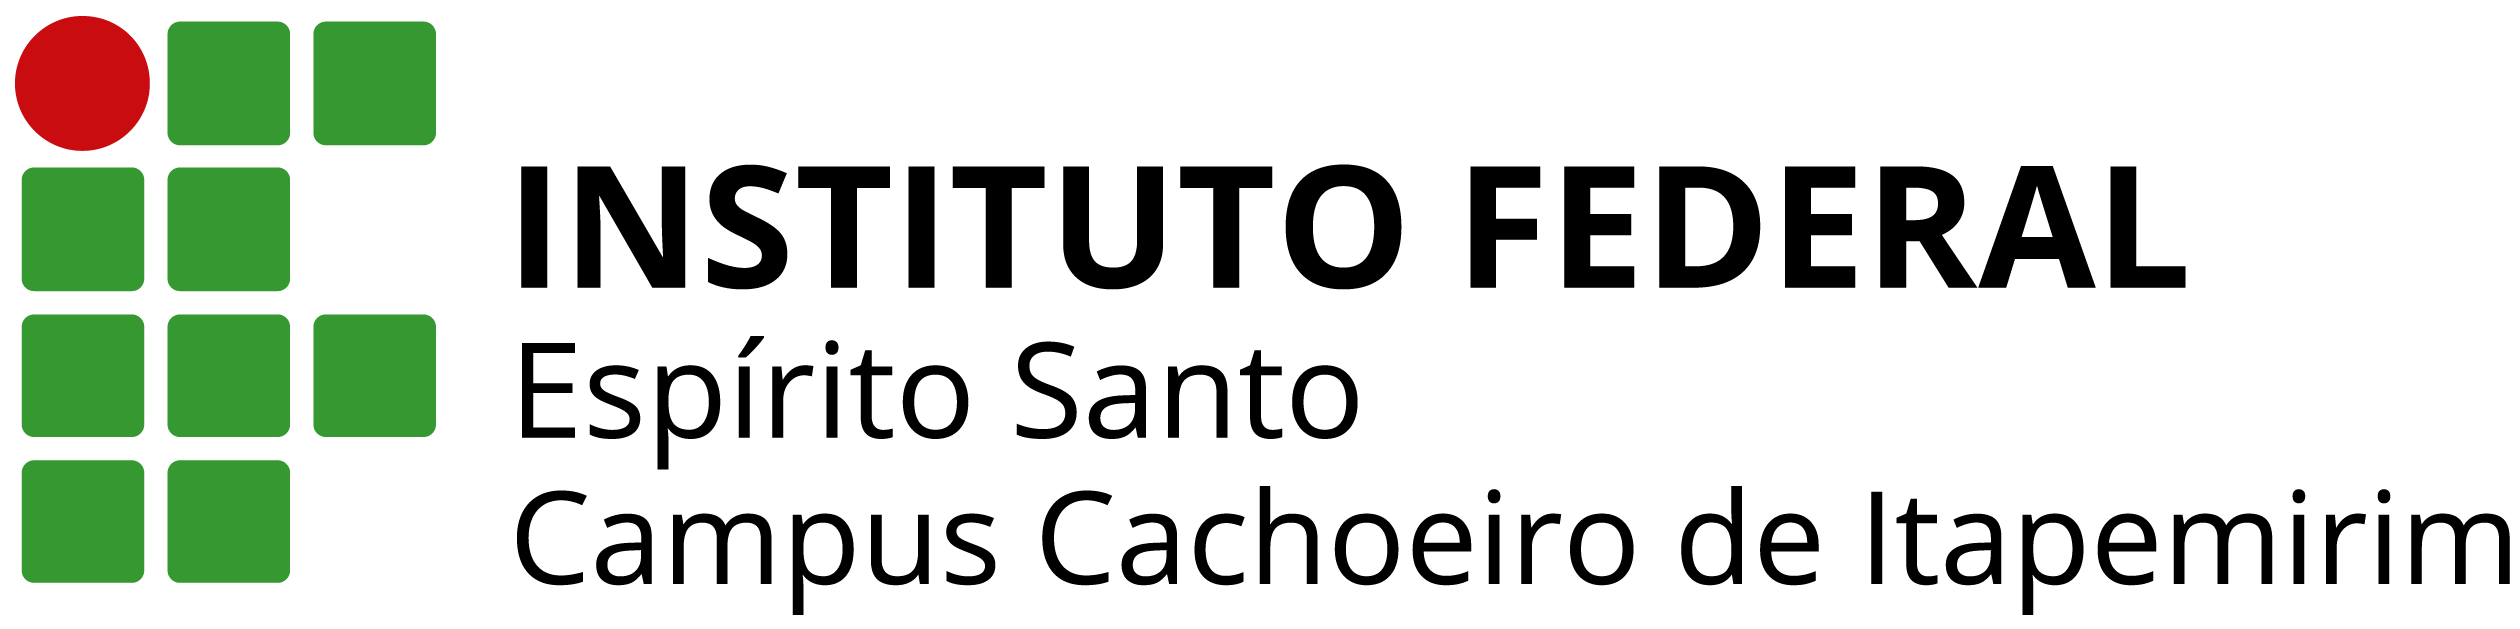 Logo do Ifes